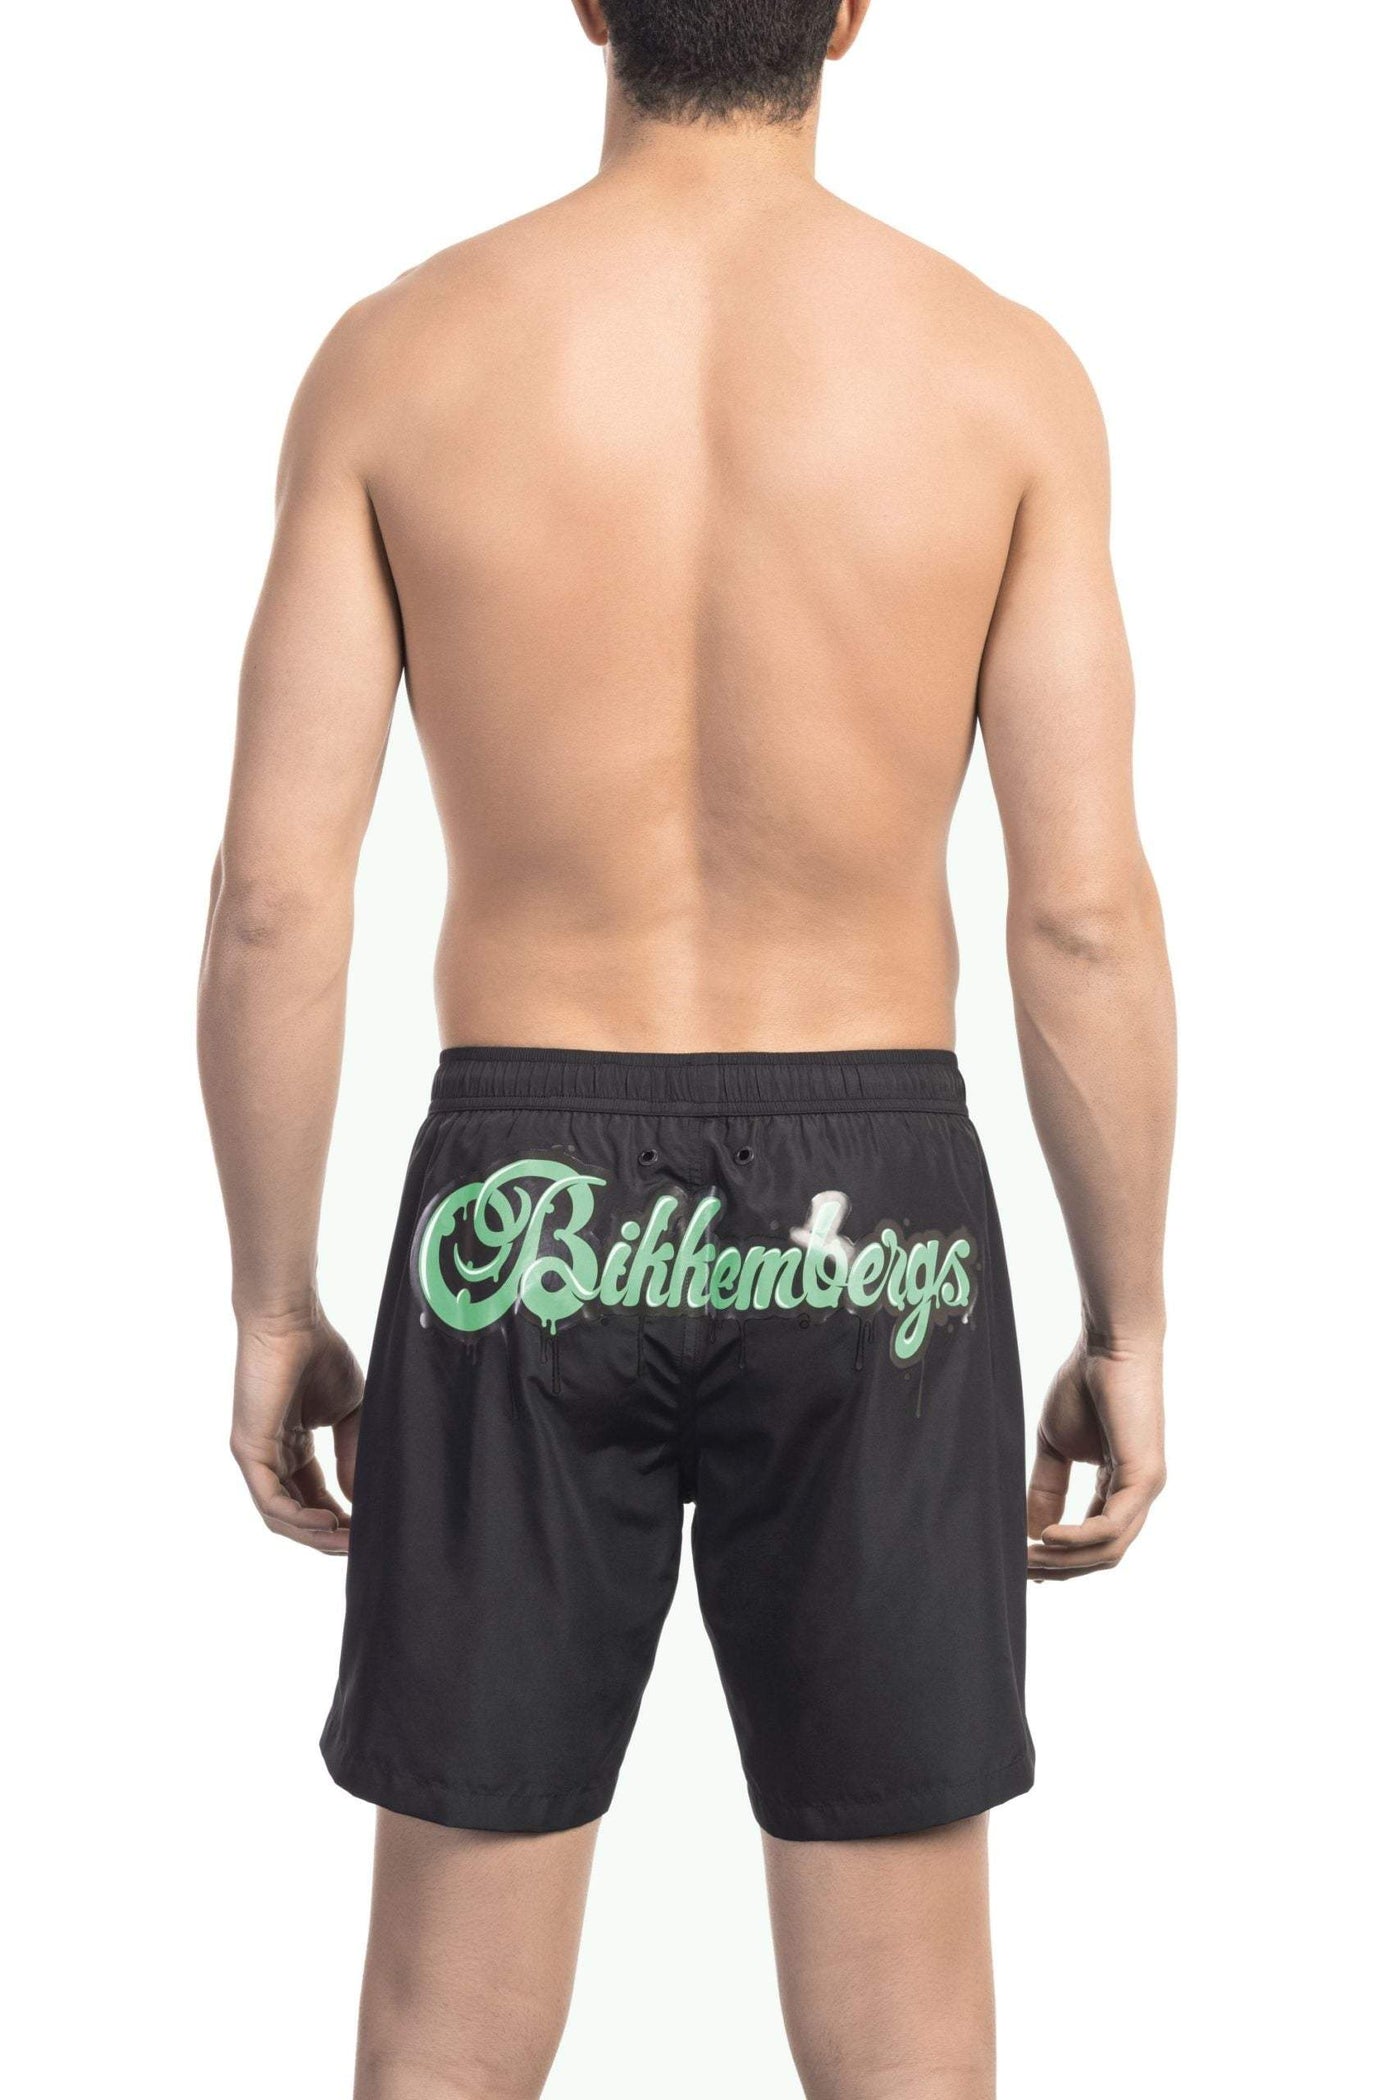 Bikkembergs Black Polyester Swimwear #men, Bikkembergs, Black, feed-1, L, M, S, Swimwear - Men - Clothing at SEYMAYKA